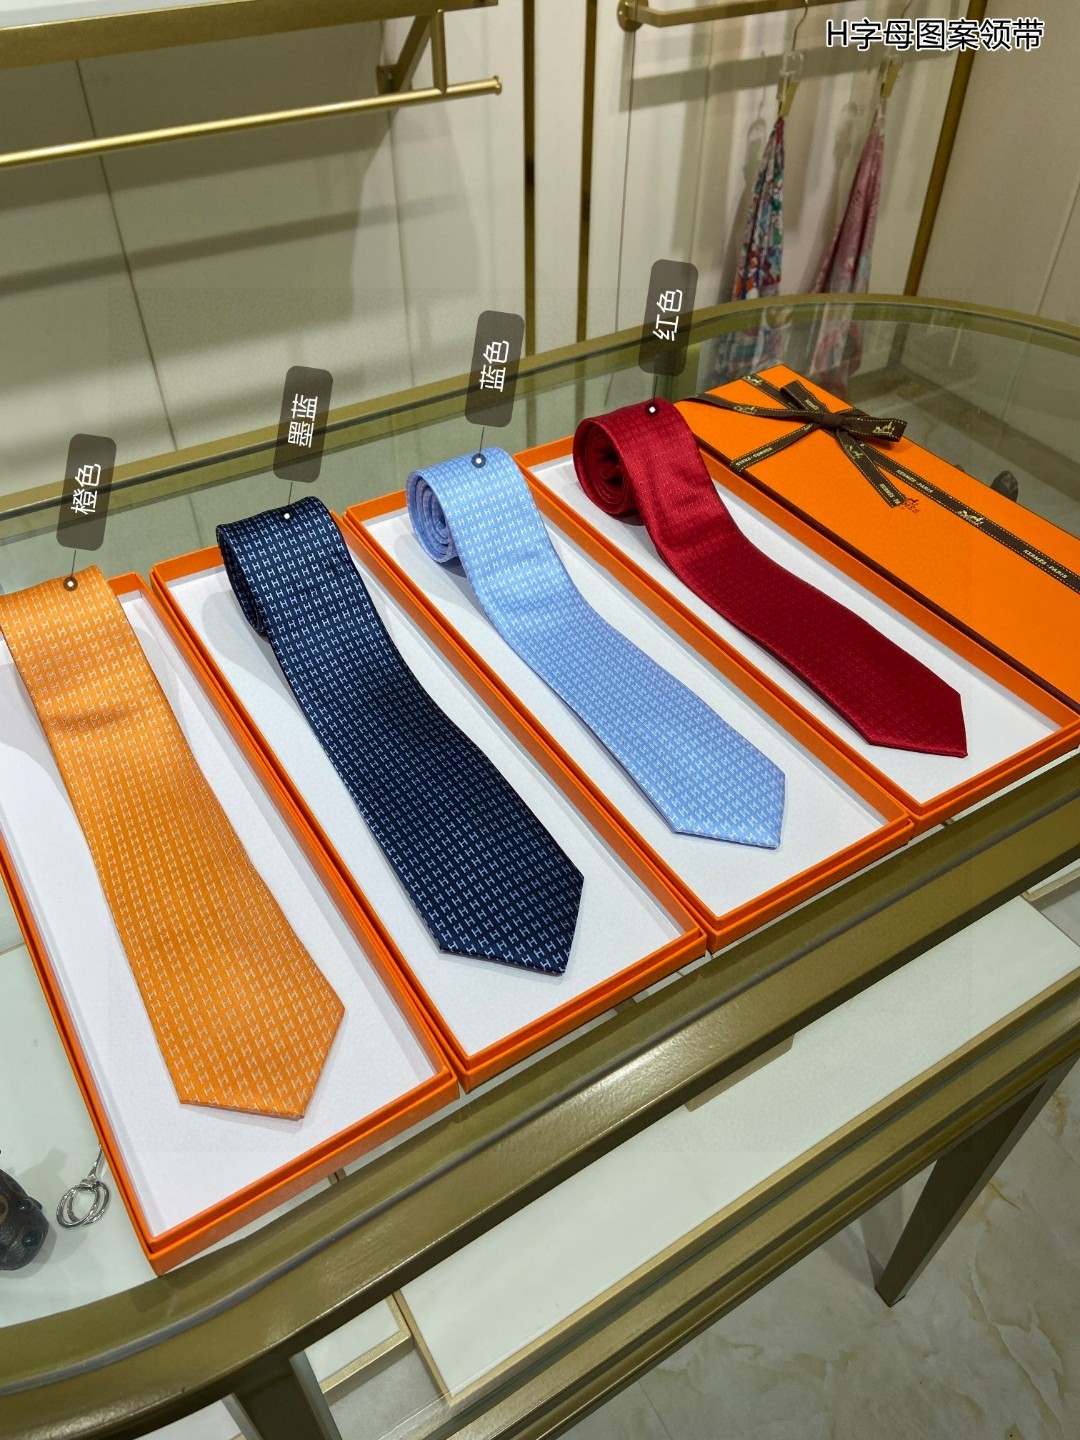 特价男士新款领带系列H字母图案领带稀有H家每年都有一千条不同印花的领带面世从最初的多以几何图案表现骑术活